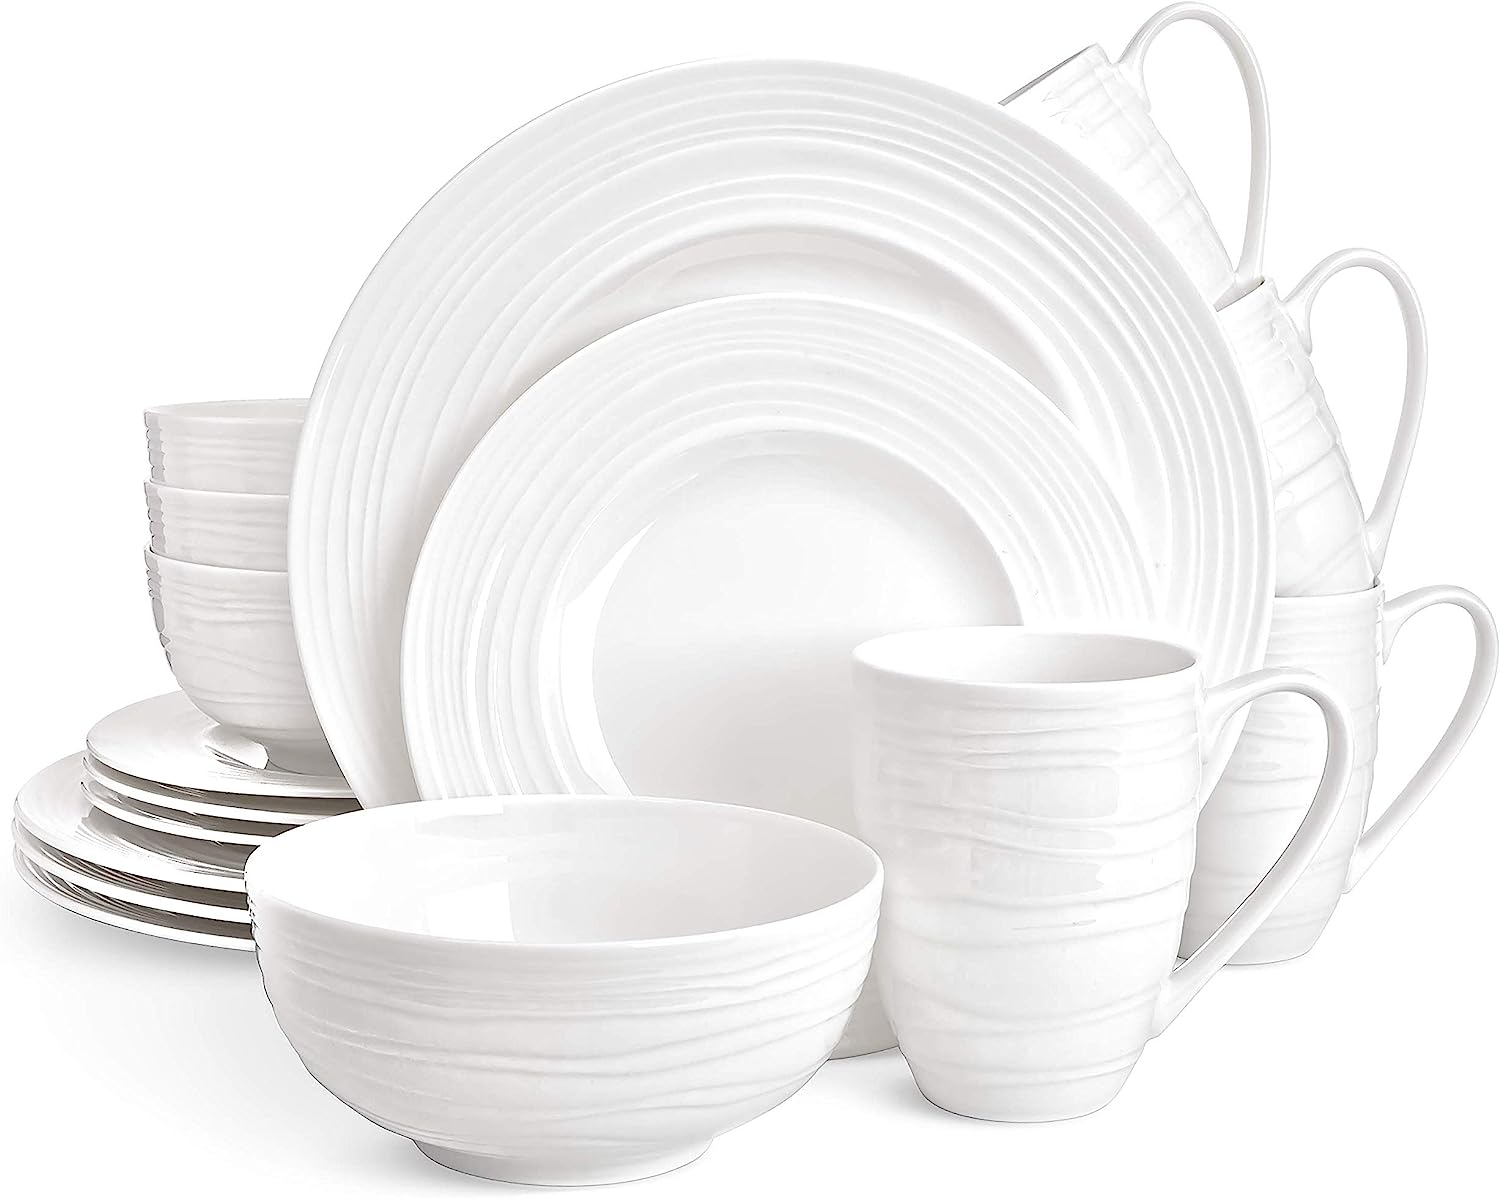 Divitis Home Infinity bone china dinnerware set 16pcs, [...]